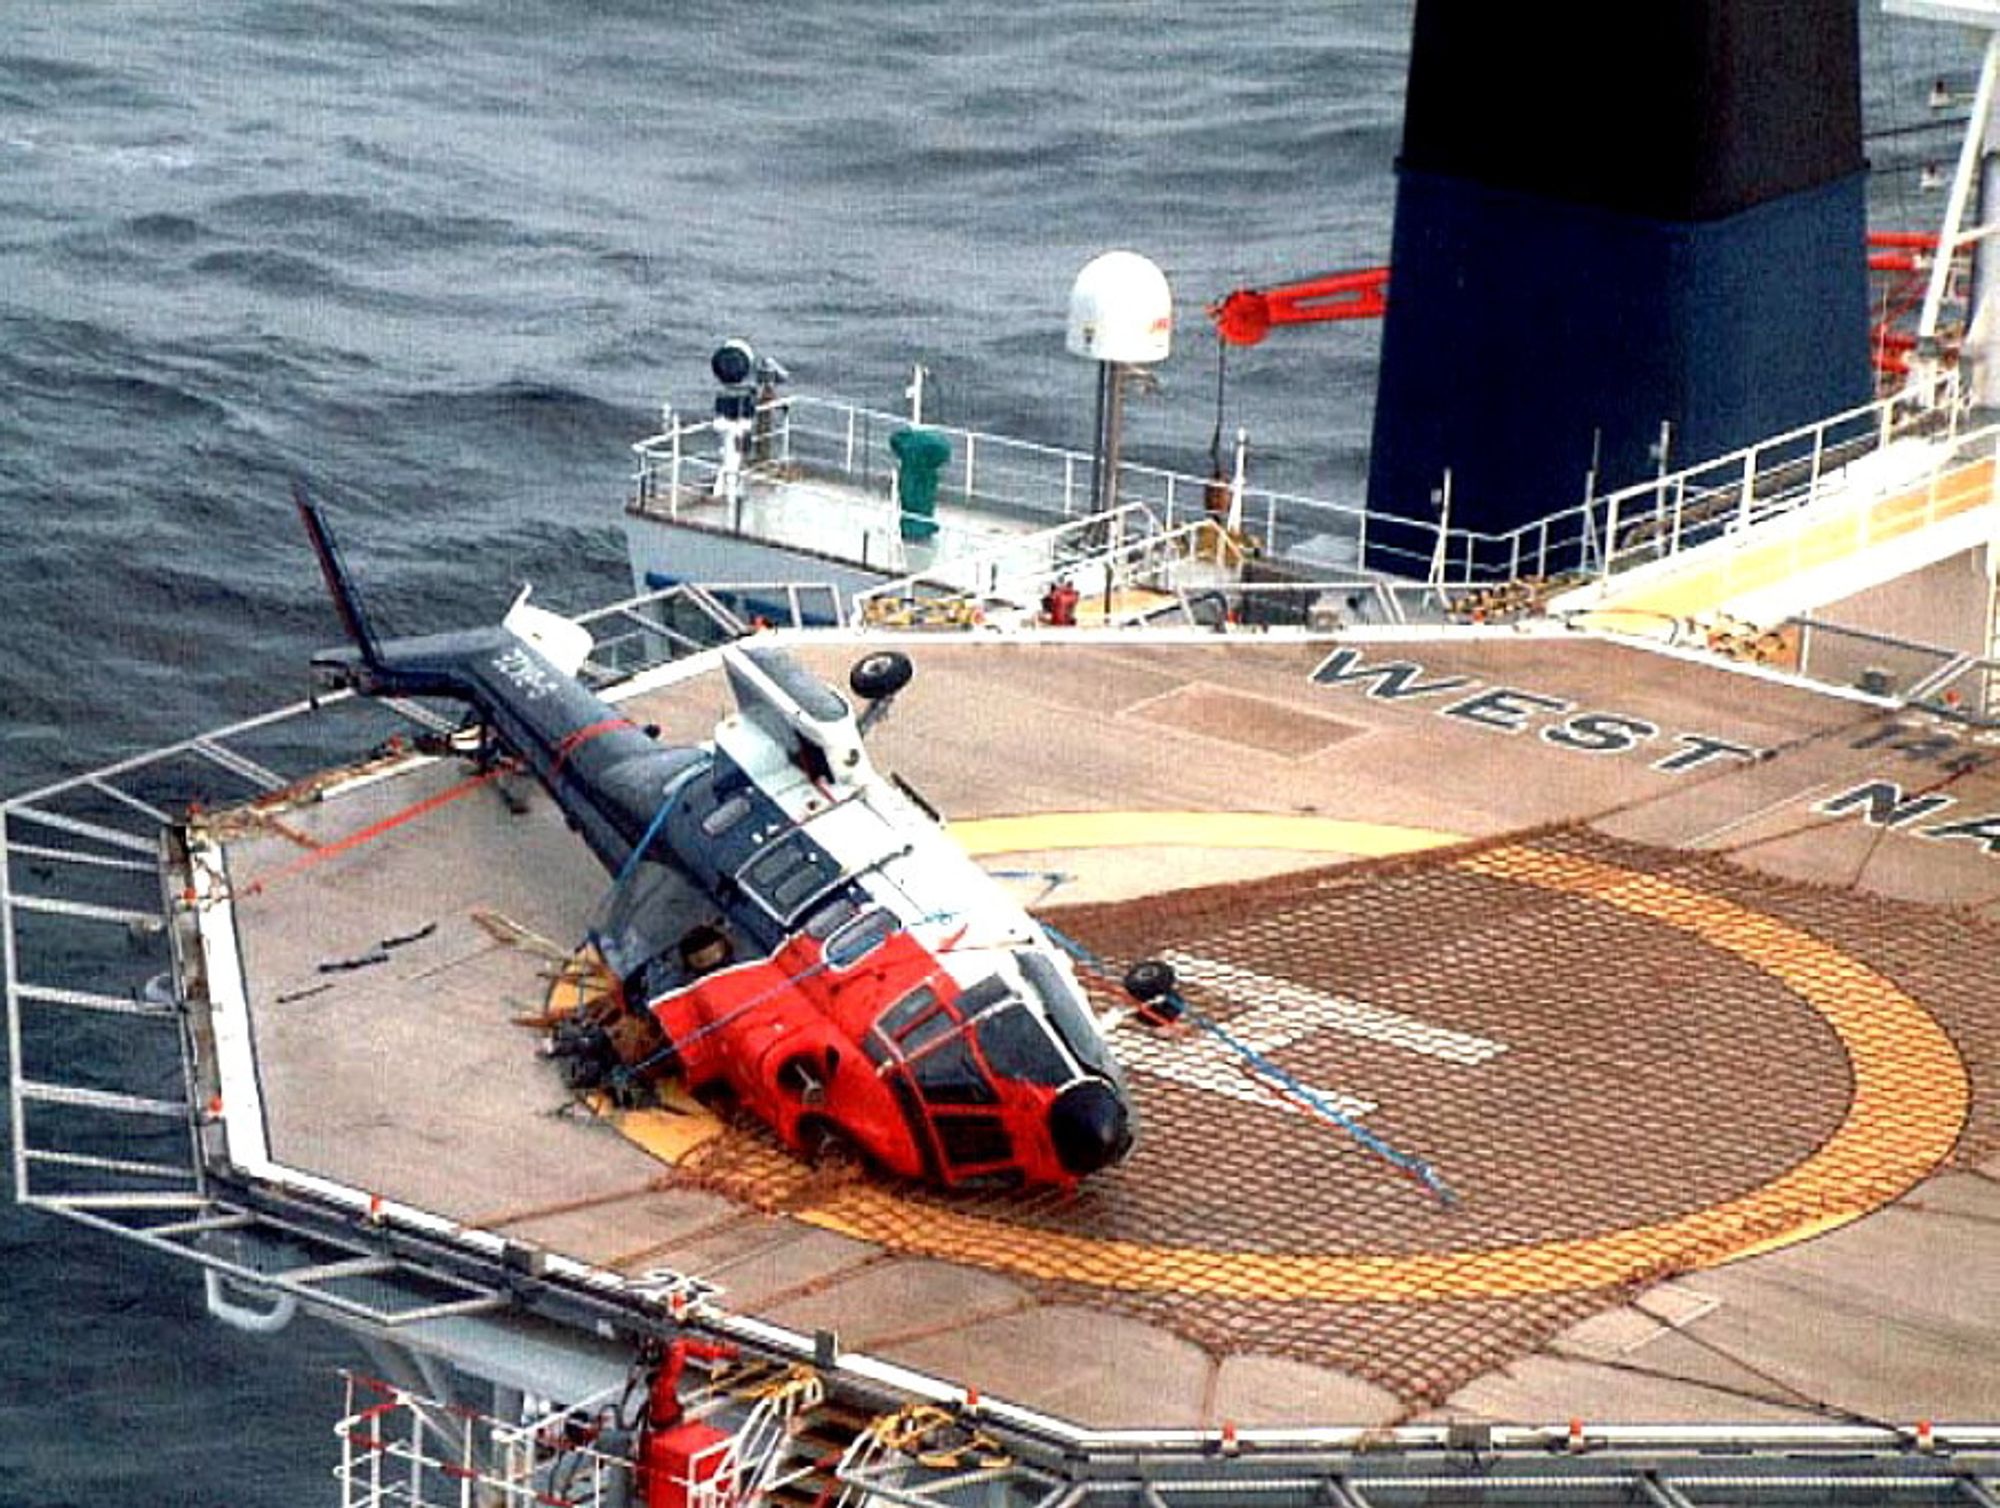 Dette AS332L Super Puma-helikopteret fra CHC veltet på helidekket på et borefartøy vest for Shetland i 2001. Ulykken skjedde under drivstoffylling med rotorene igang, der skipet endret kurs slik at vindretningen ble ugunstig. Kun flygeren var om bord i helikopteret og han overlevde ulykken. 